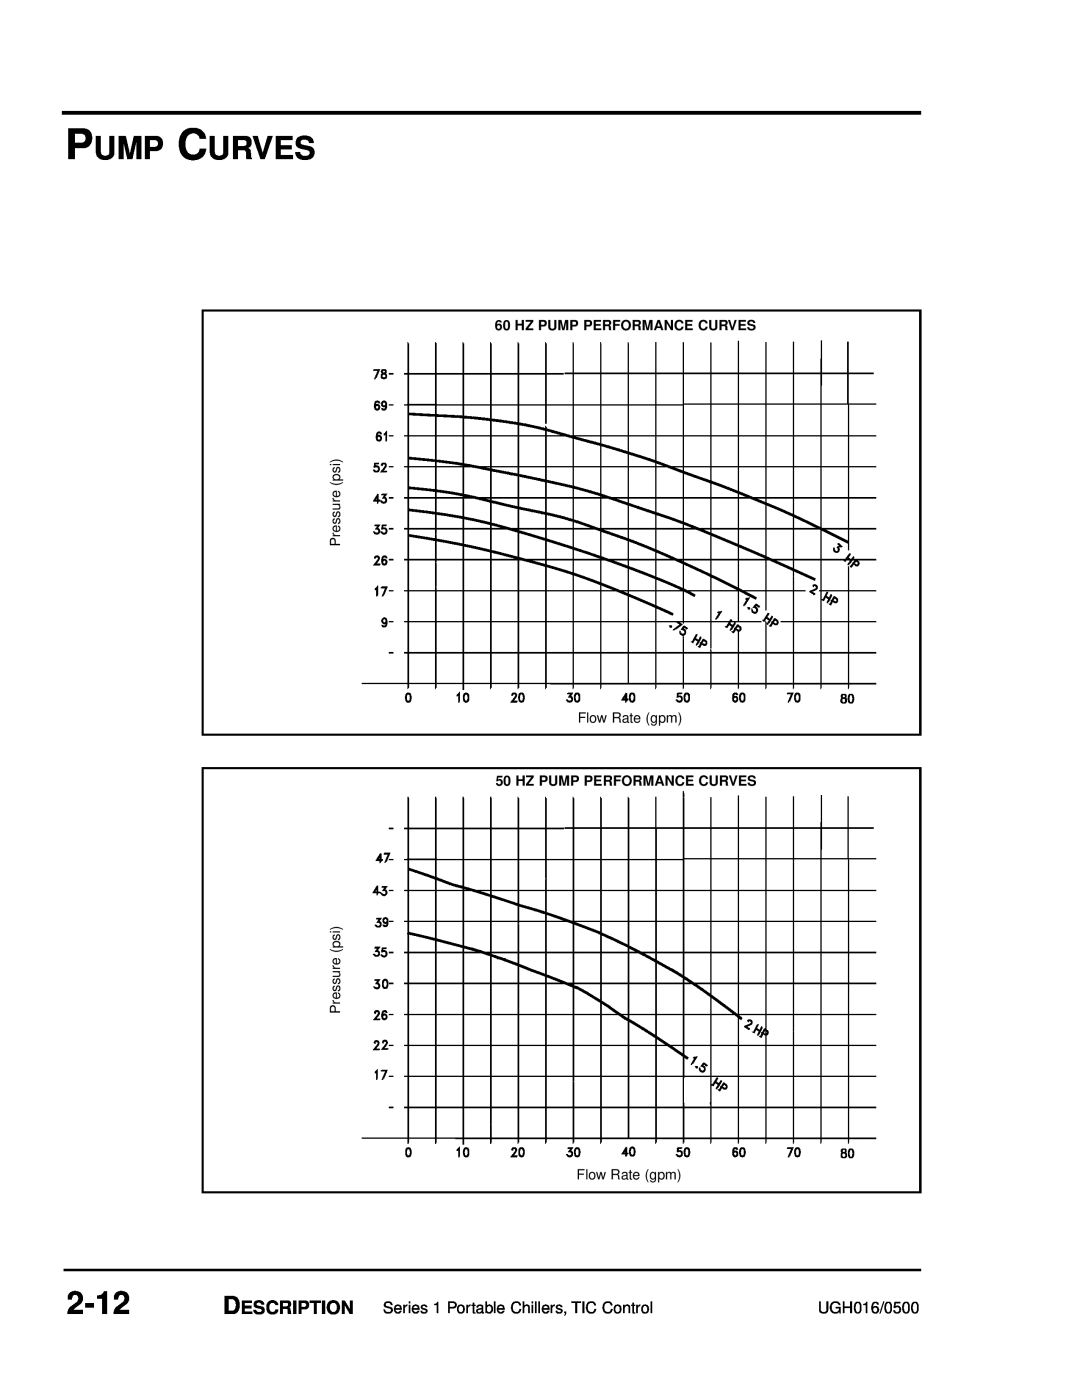 Conair UGH016/0500 manual Pump Curves, 2-12, Hz Pump Performance Curves 